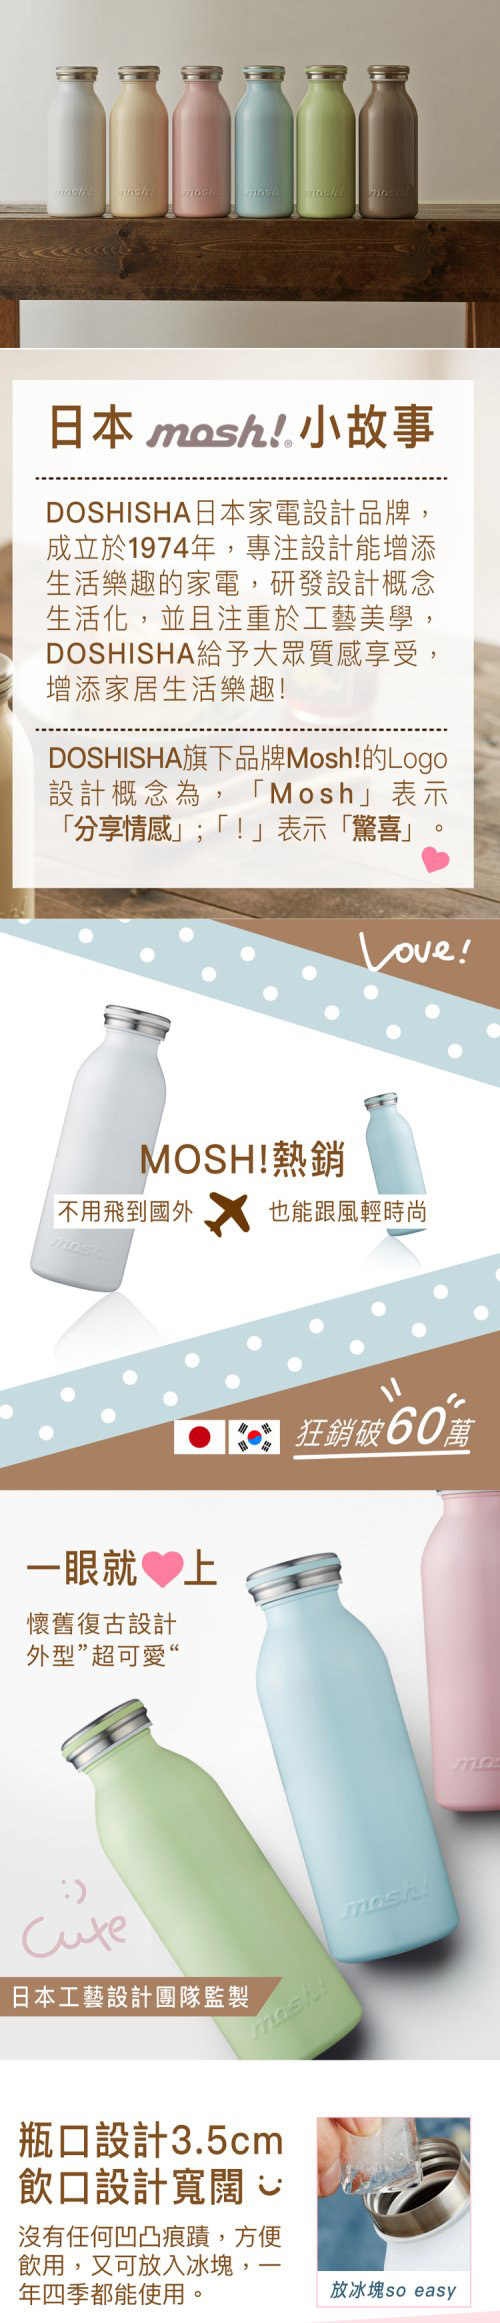 日本 MOSH! 450ML保溫瓶 可可棕